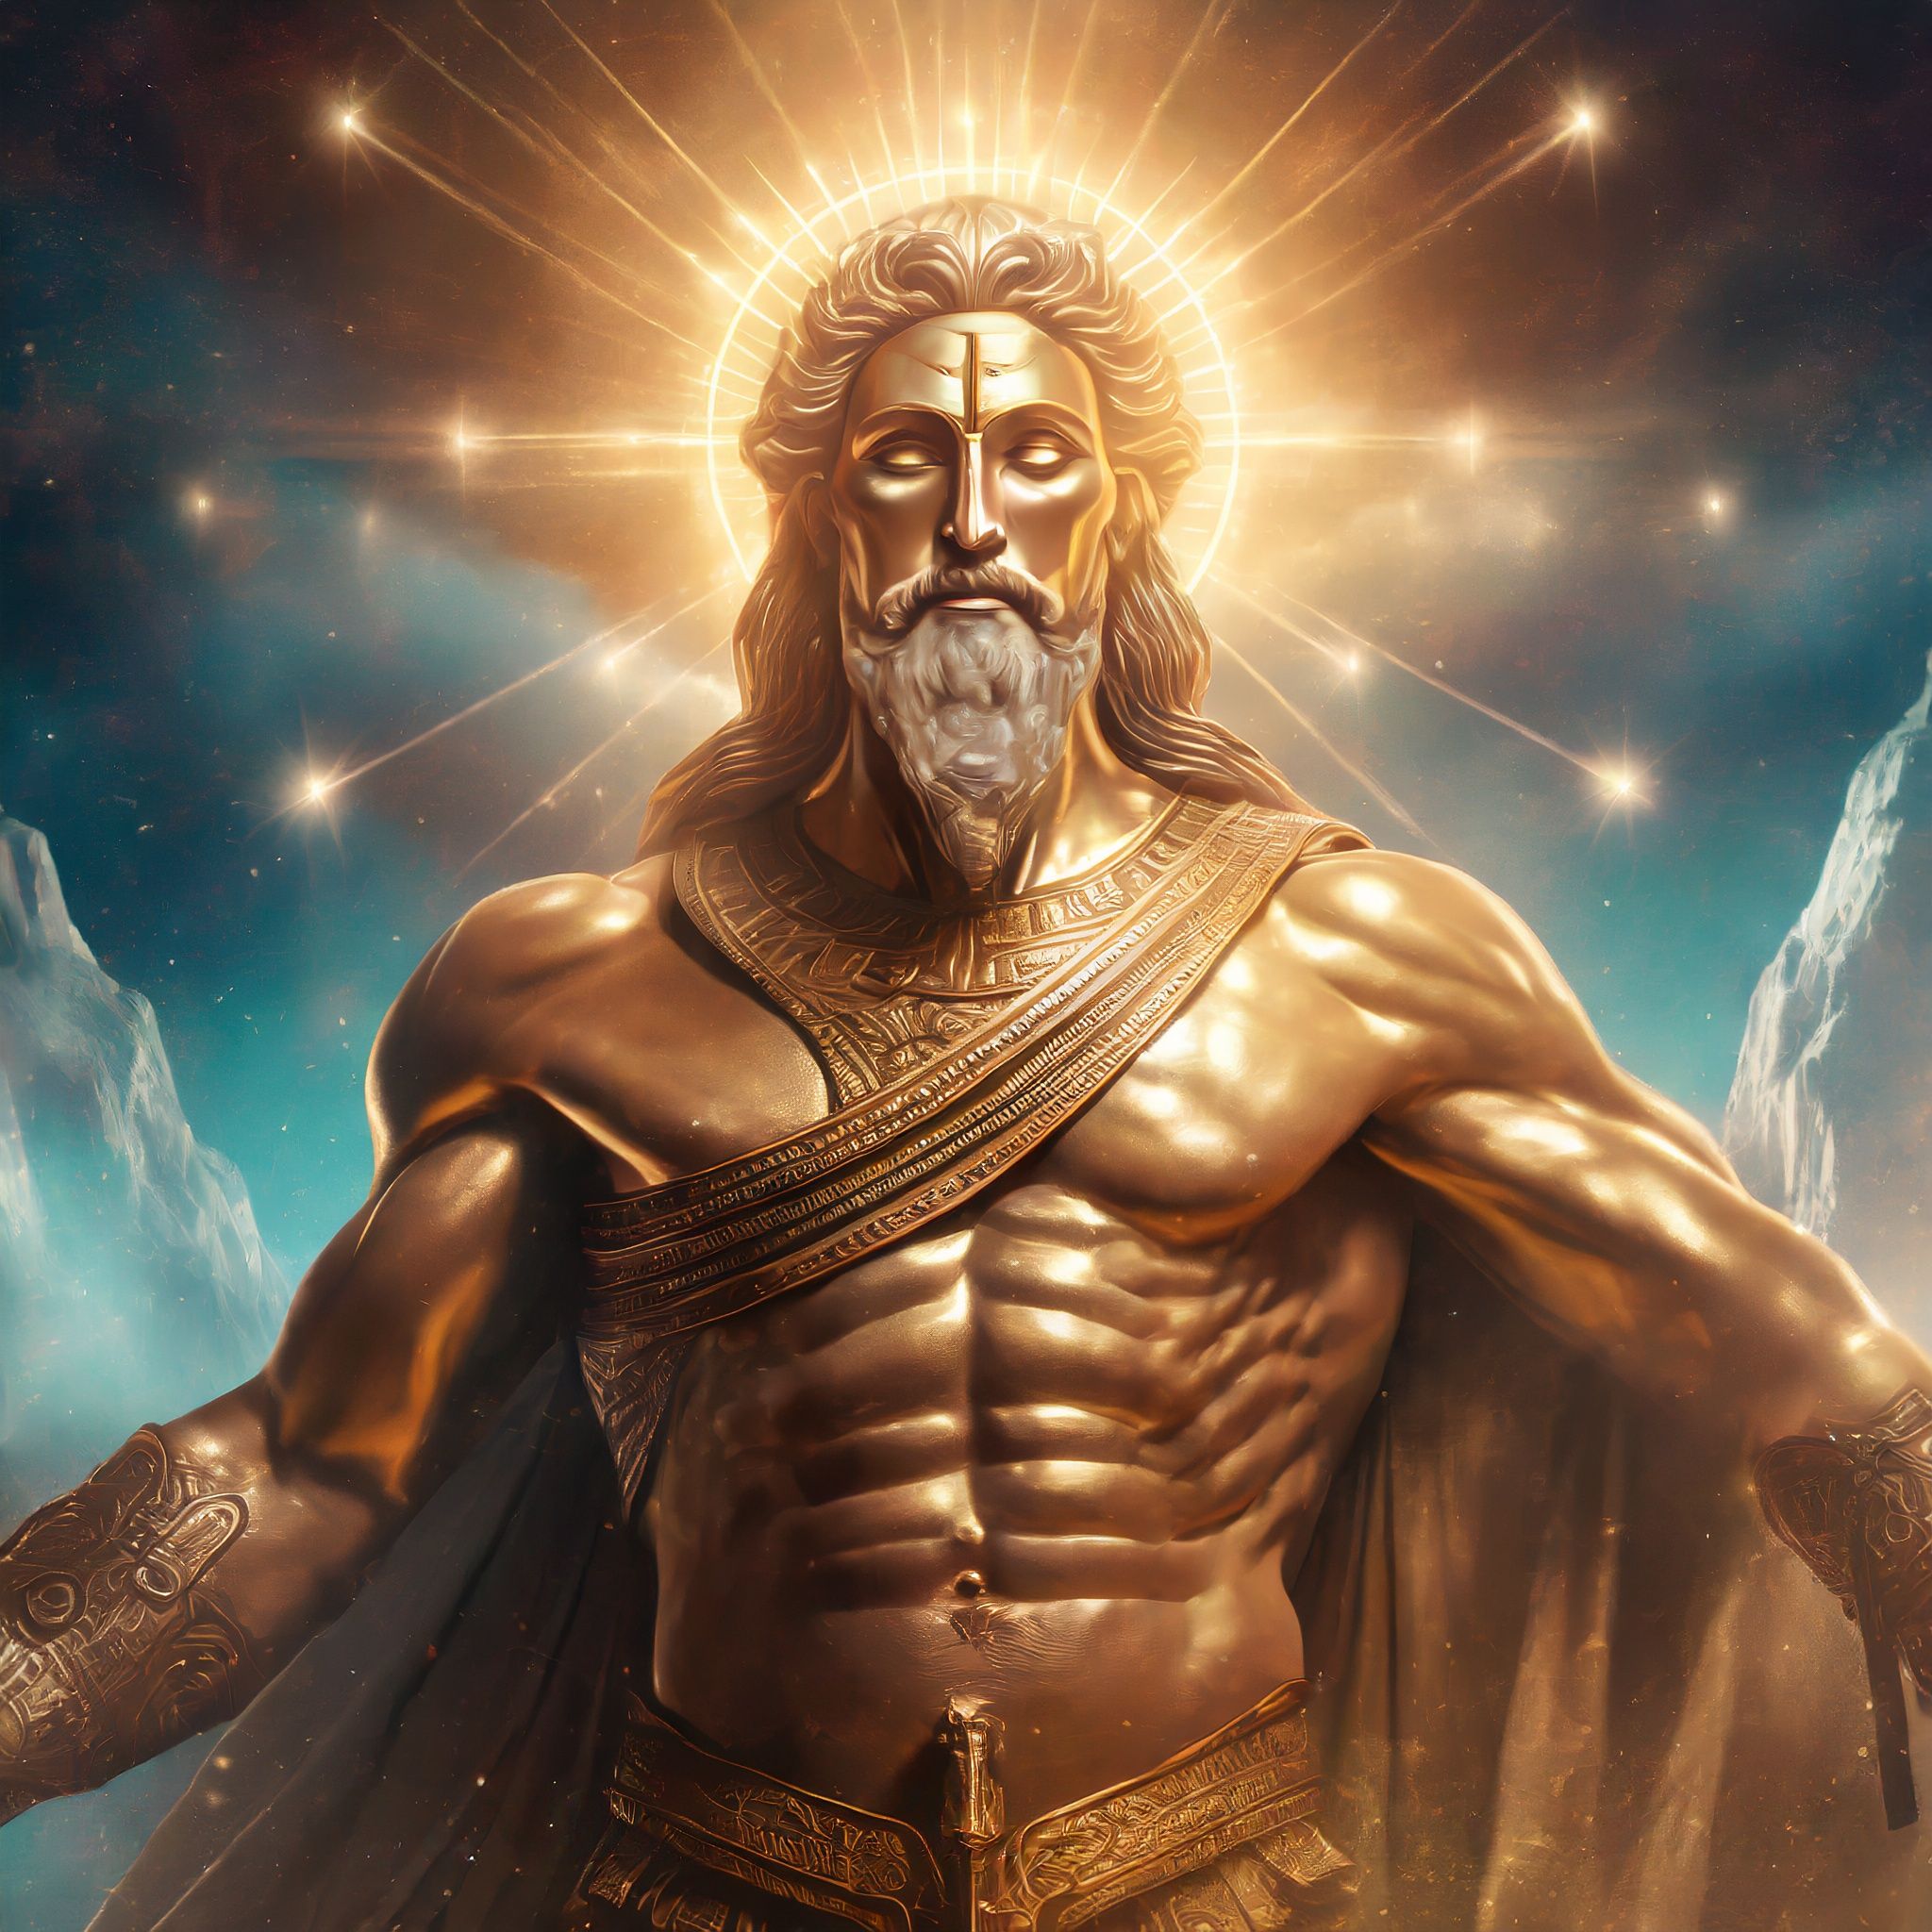 A portrait of the God Zeus.